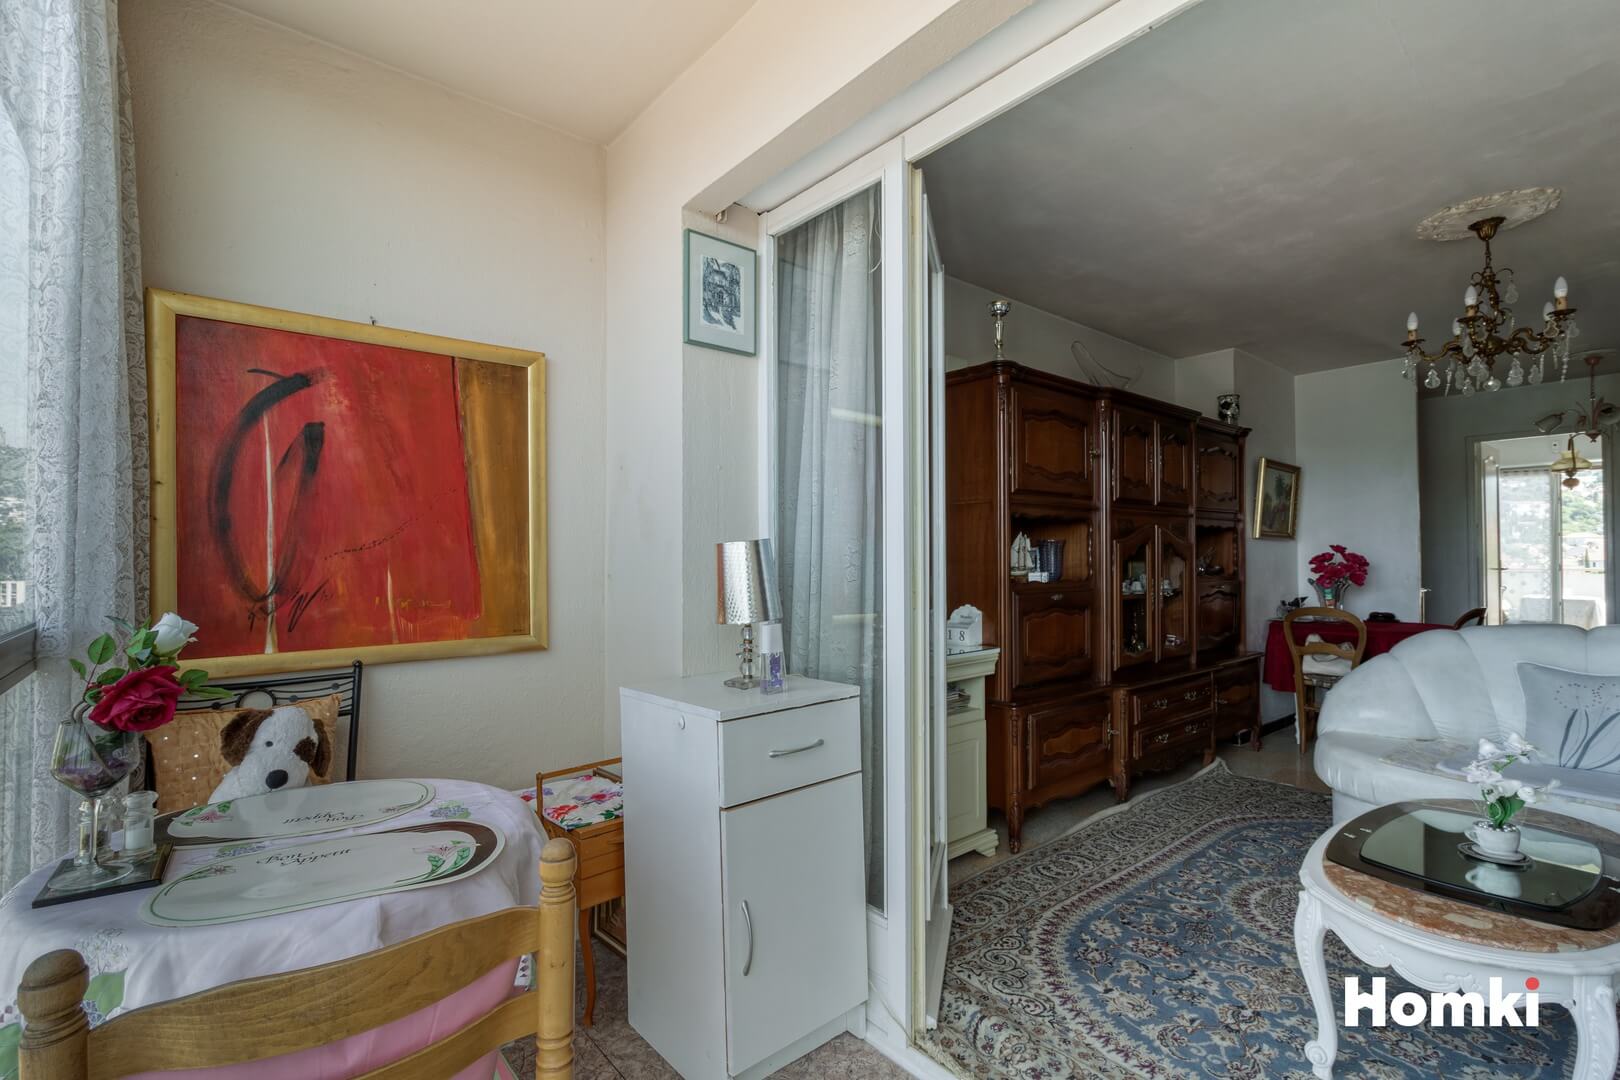 Homki - Vente Appartement  de 66.0 m² à Toulon 83200